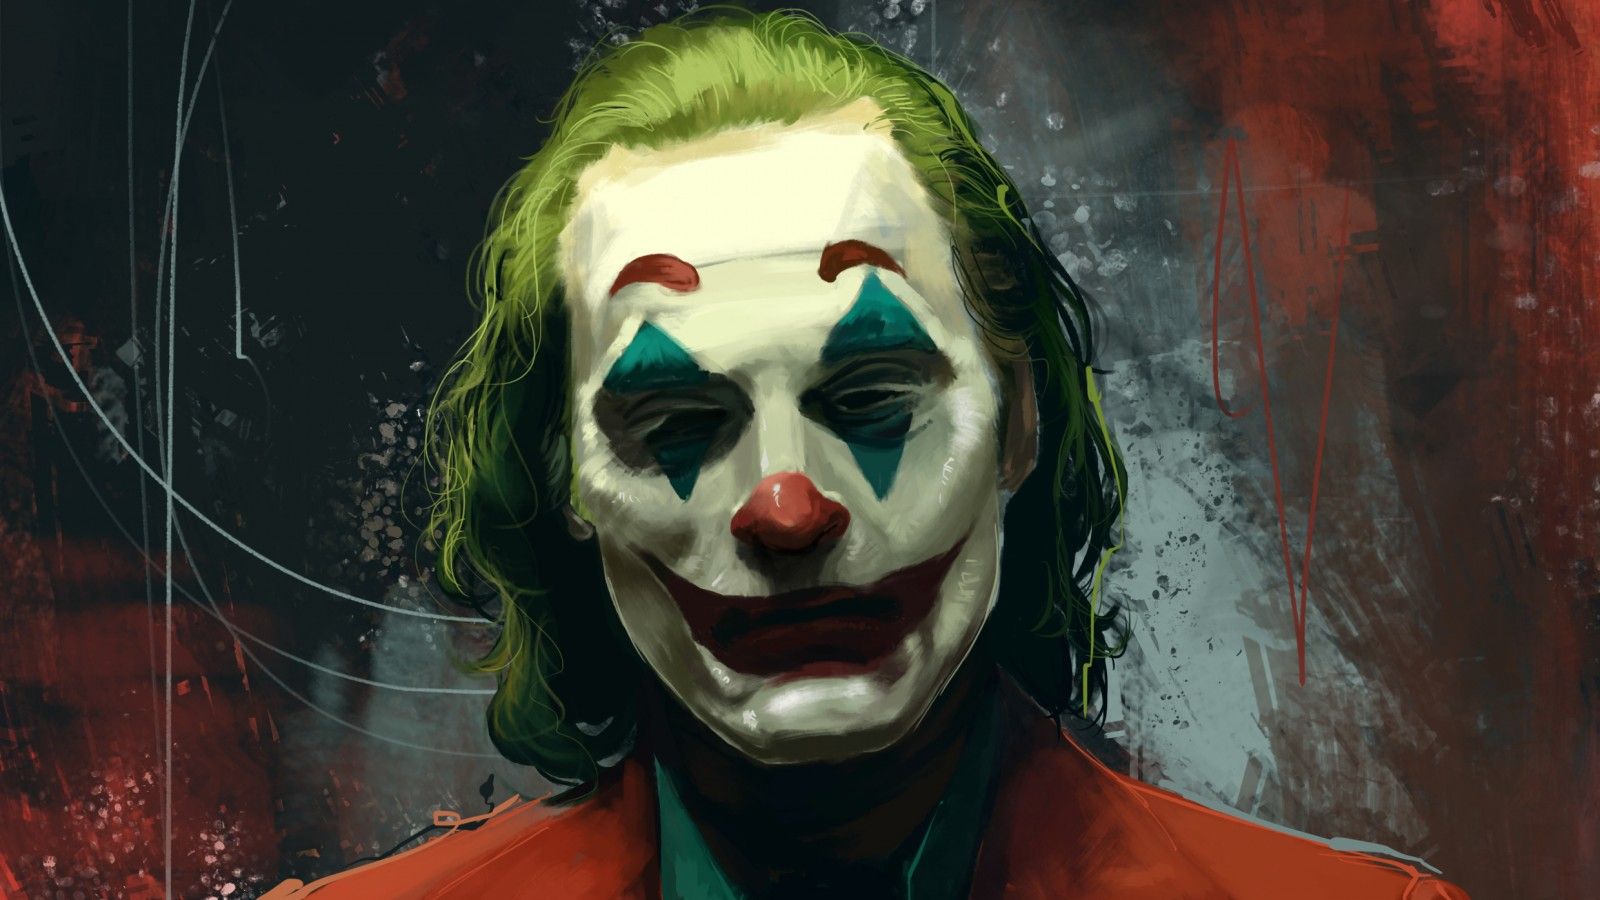 Wallpaper, Joaquin Phoenix, Joker 2019 Movie, Batman, DC Comics, DC Universe, clown, super villain, comics, movie characters, digital art, artwork, fictional character, fictional characters 2480x1395